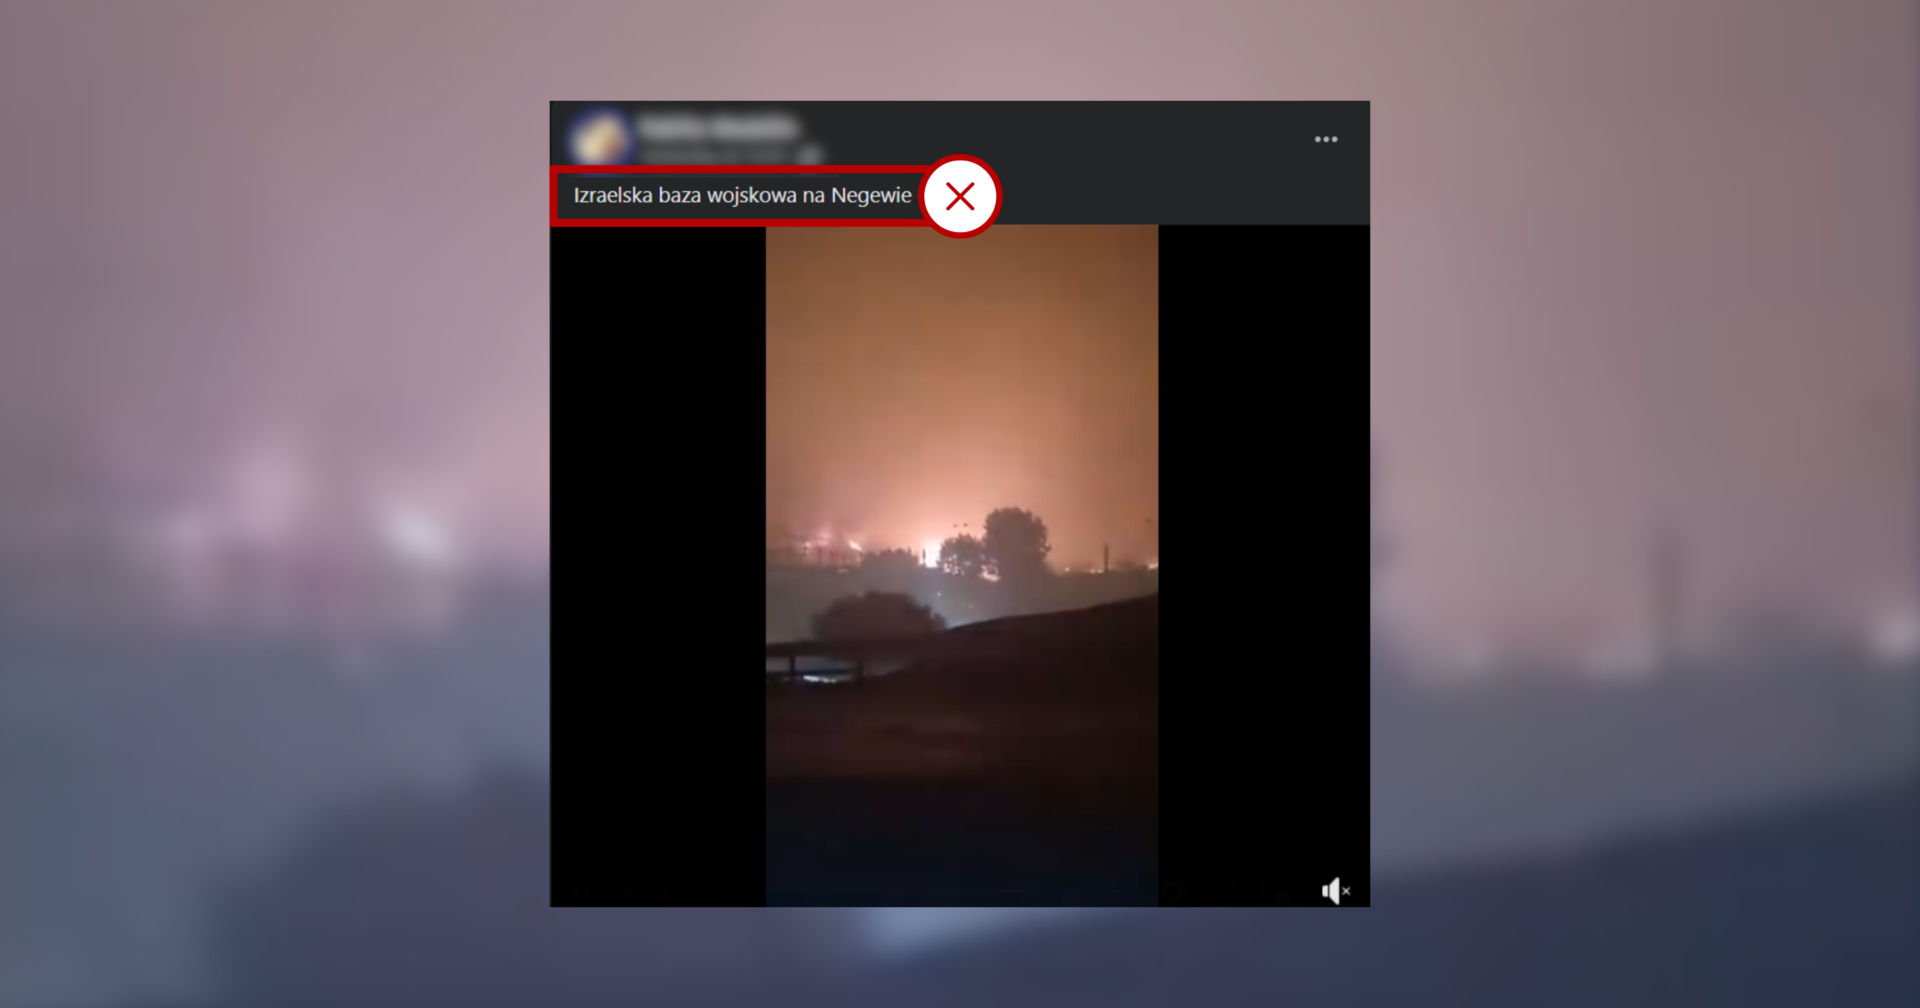 Screenshot posta na Facebooku. Do nagrania przedstawiającego pożar dodano podpis: „Izraelska baza wojskowa w Negewie”. To fake news, dlatego dookoła tekstu widnieje czerwona ramka. Filmik obrazuje pożar w Chile.